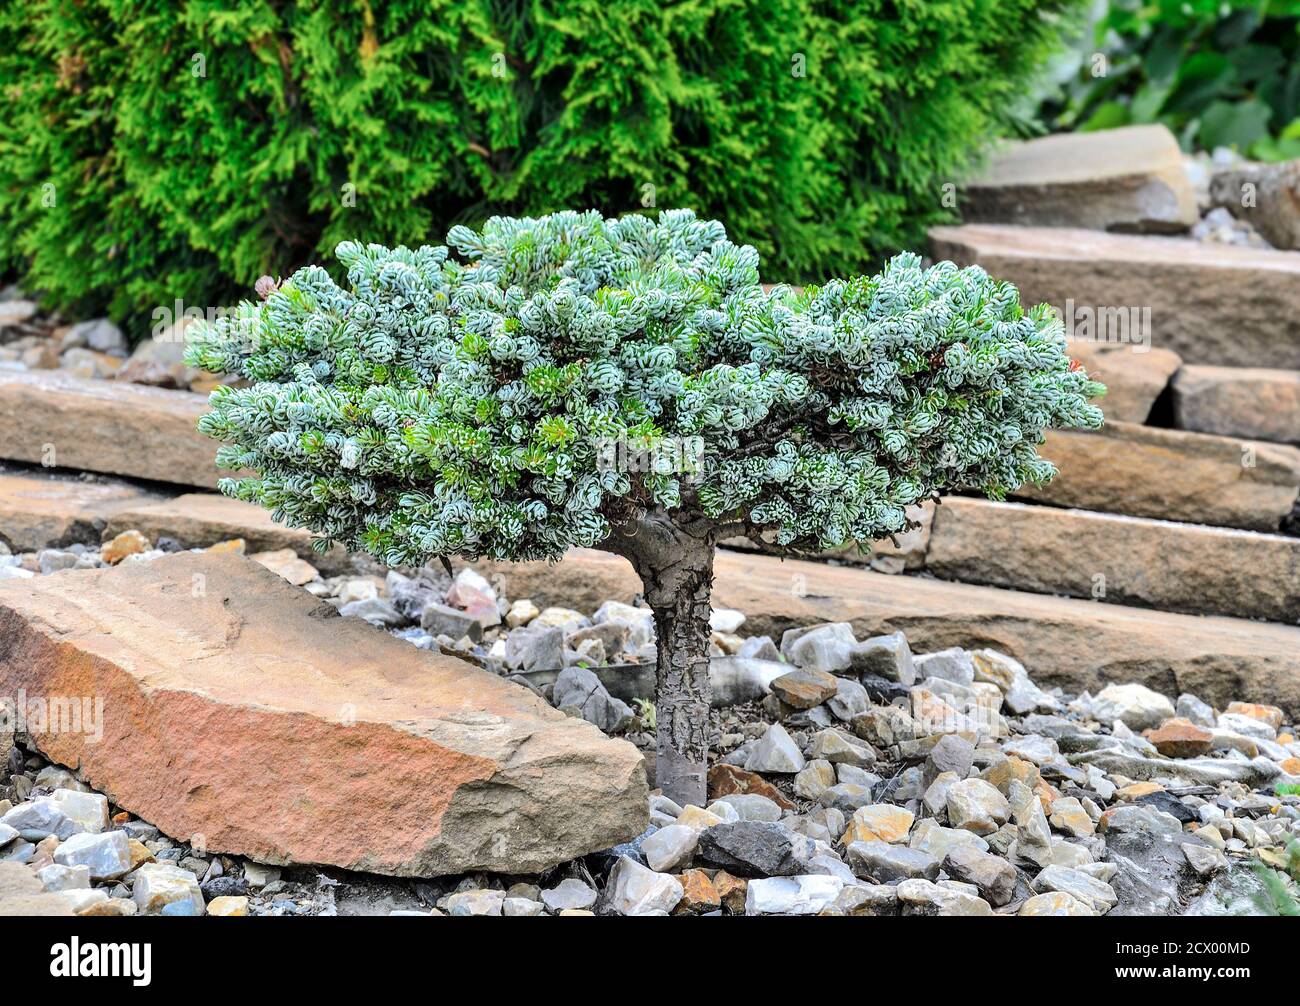 Zwerg Nadelbäume immergrüne Pflanze Korean Fir 'Kohouts Icebreaker' (Abies koreana) in steinigen Gartenlandschaft. Seltene Sorte mit silbernen gebogenen Nadeln. Stockfoto